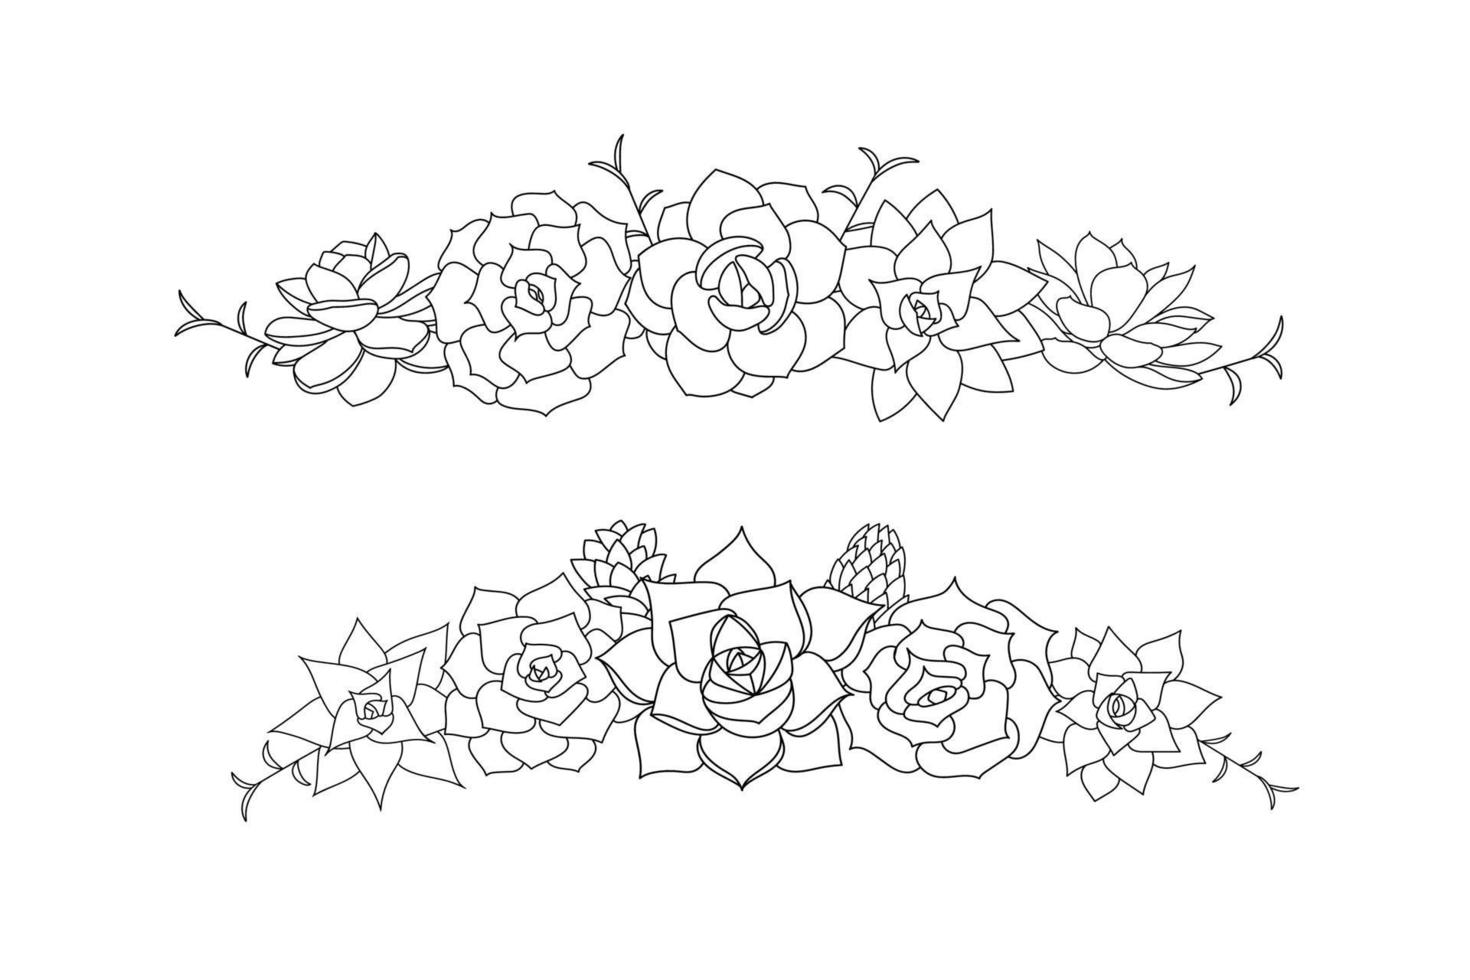 saftiger Echeveria-Vektorrahmen. hand gezeichnete wüstenblumenillustration im gekritzelstil. Stellen Sie Pflanzen mit schwarzem Umriss ein. Silhouette Sukkulenten auf weißem Hintergrund. Grenzsukkulenten zum Drucken vektor